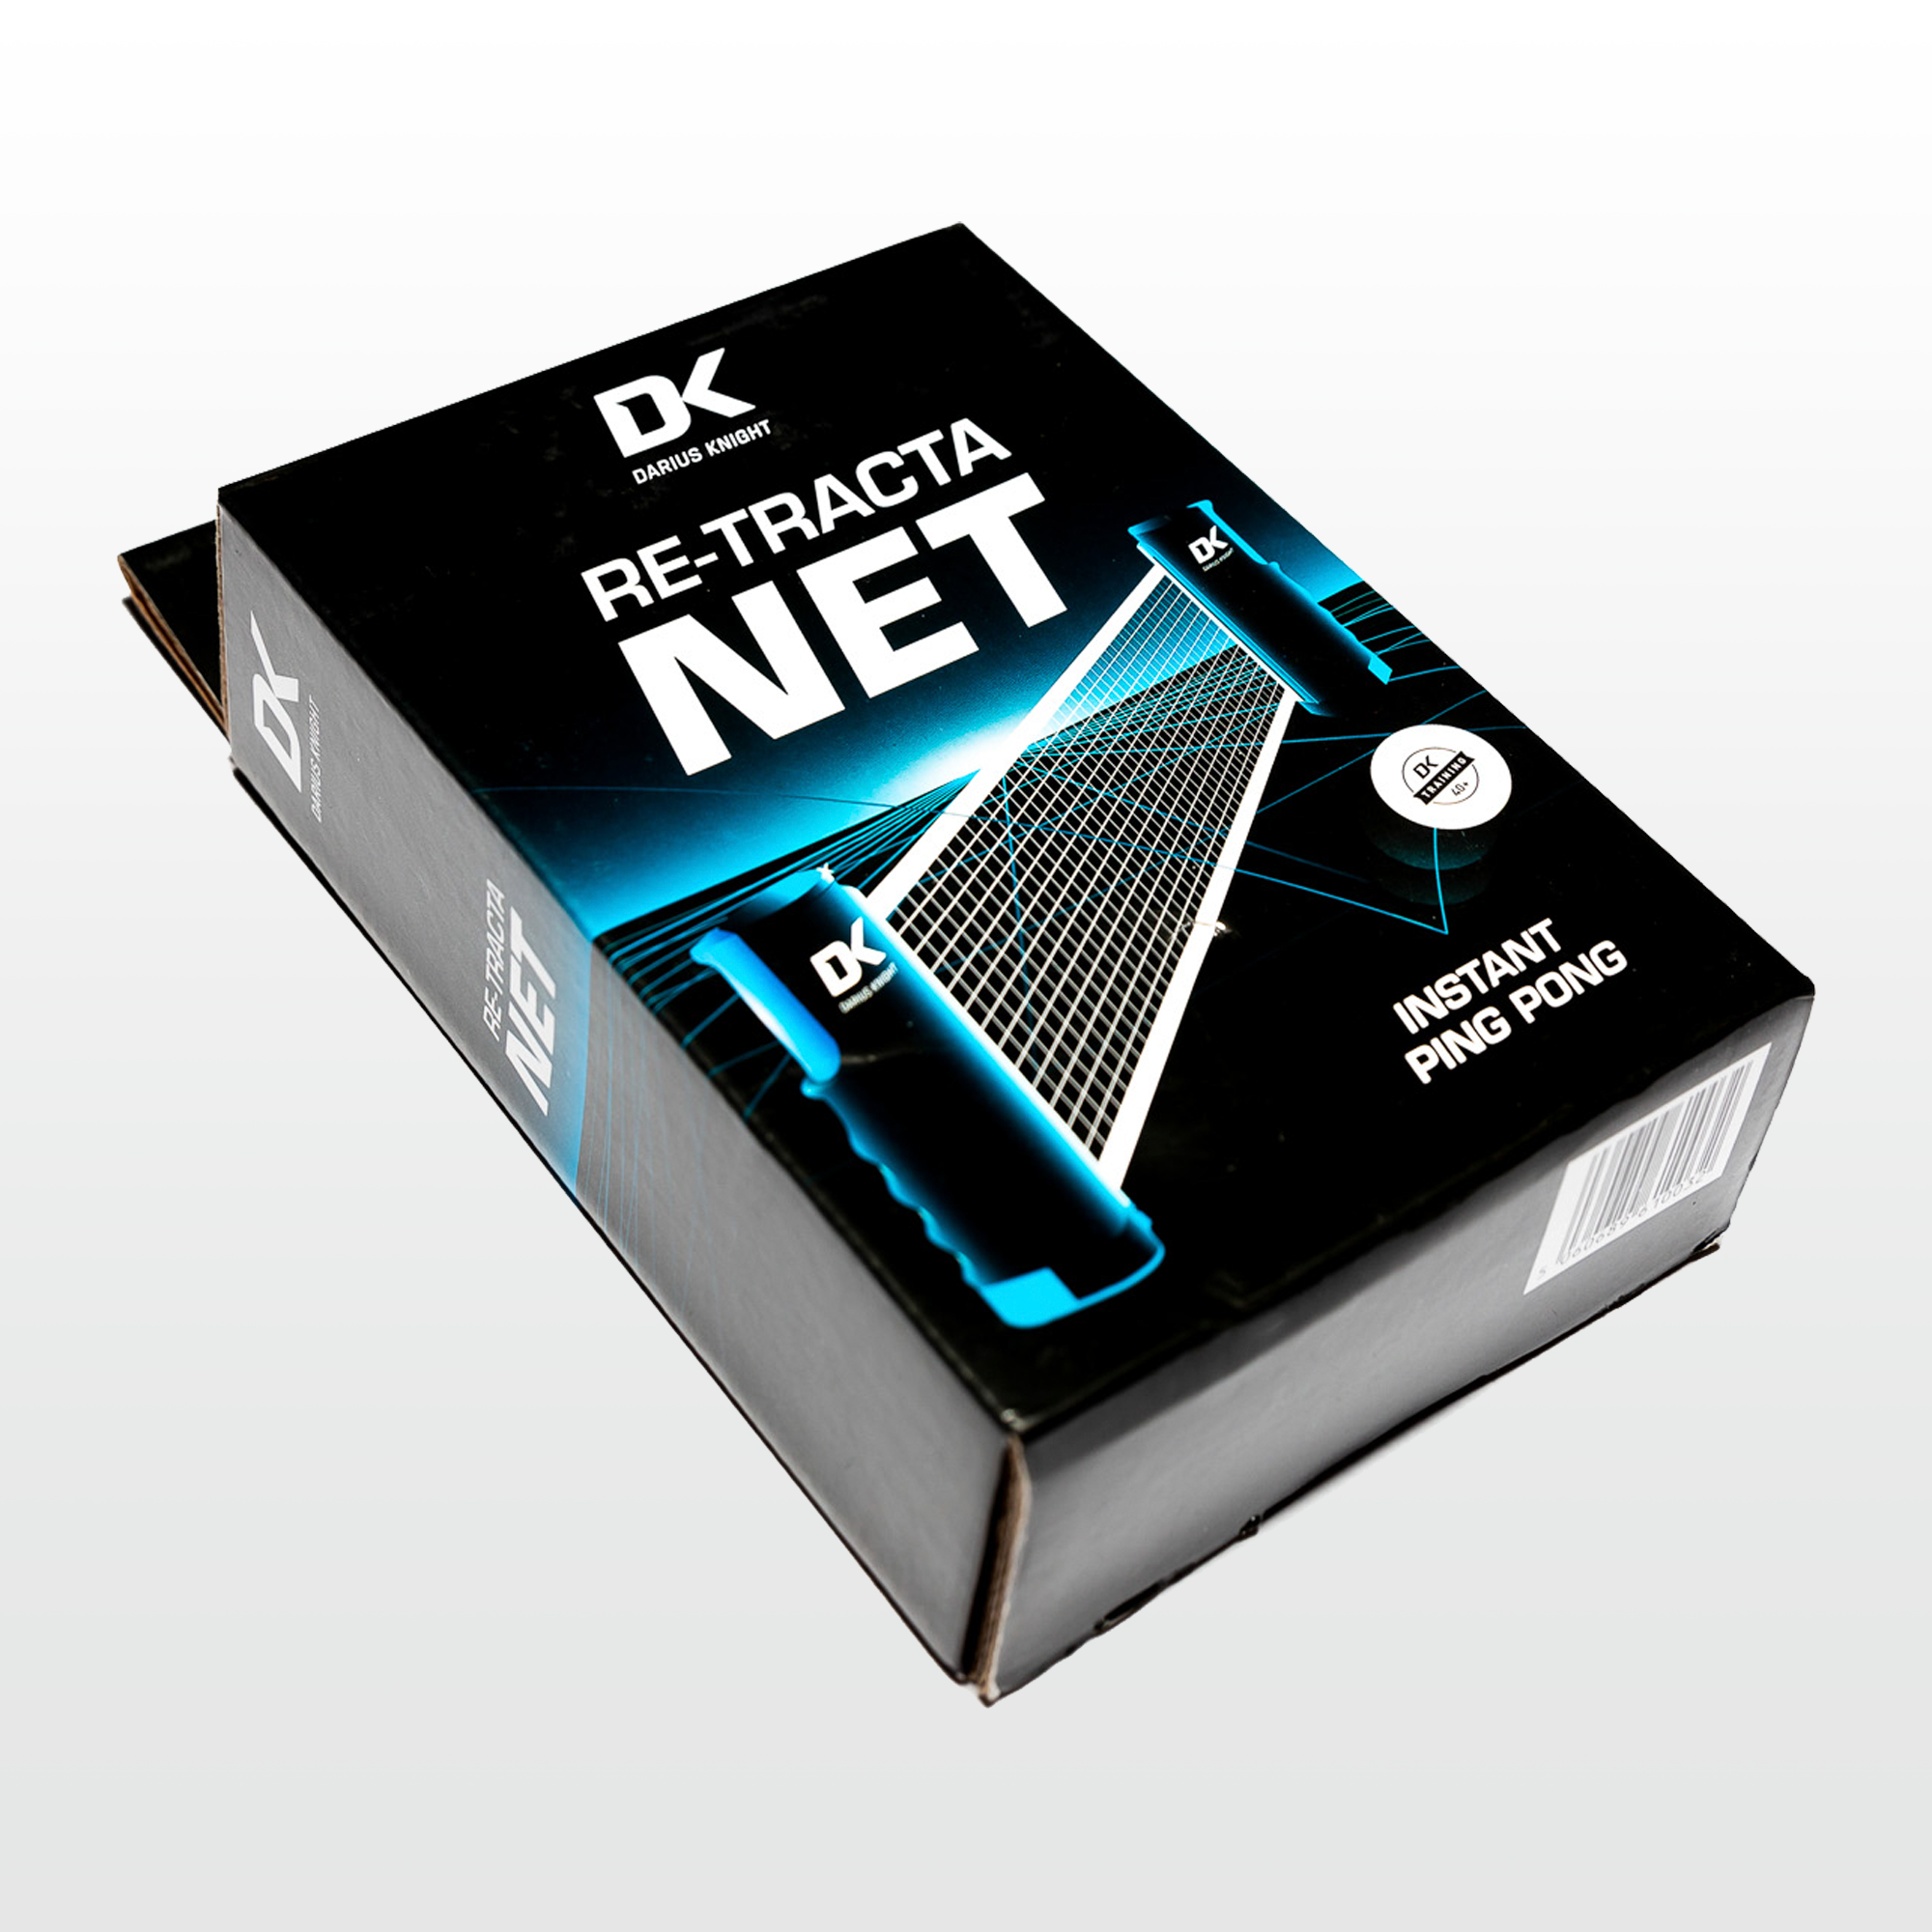 DK Re-Tracta Net - DK Sports